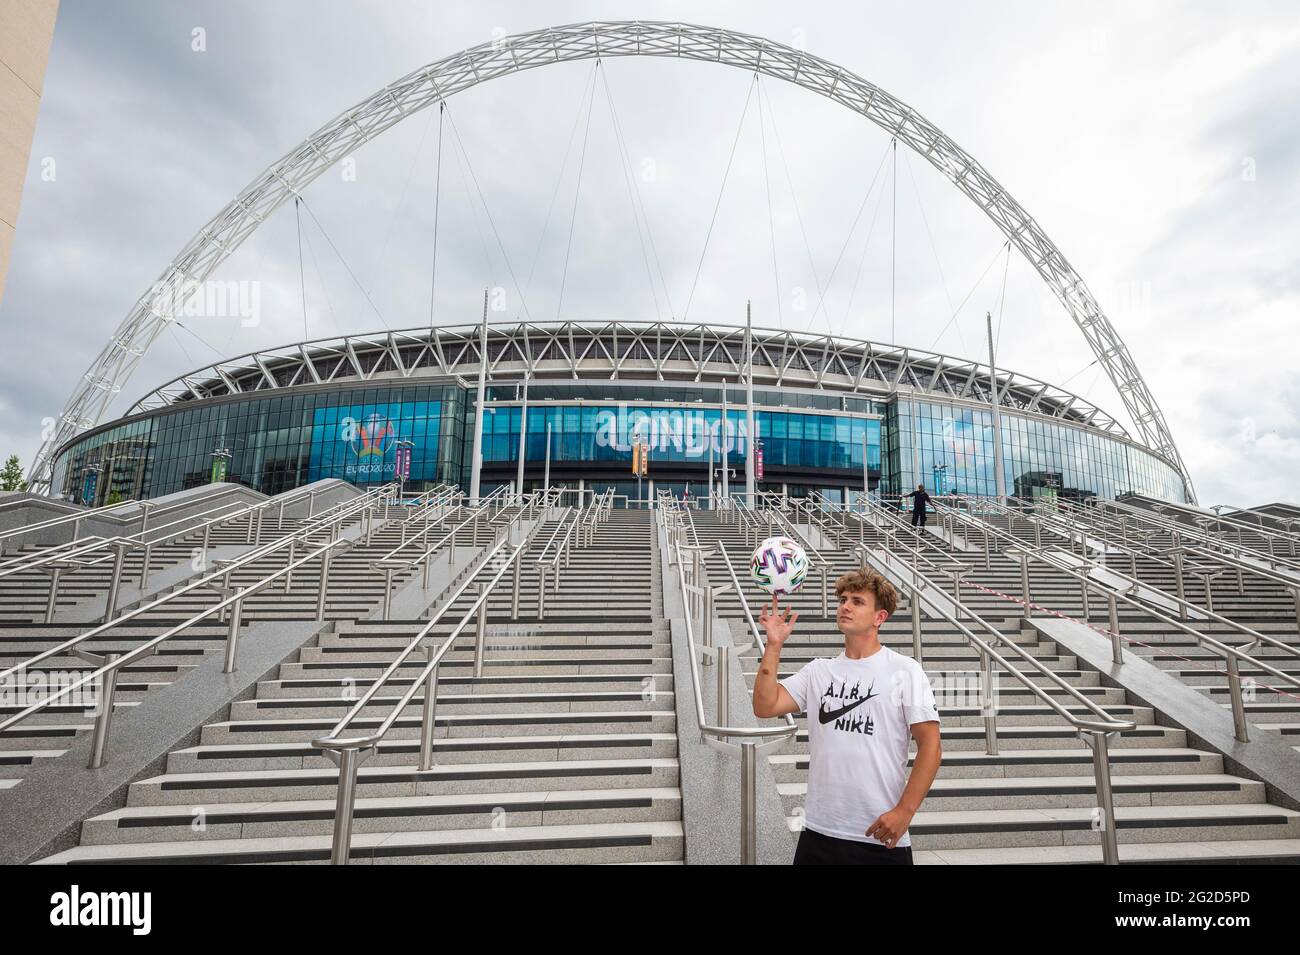 Londres, Royaume-Uni. 10 juin 2021. L'ambassadeur de l'euro 2020, Scott Penders, pratique le jonglage avec un football à l'extérieur du stade Wembley pour le prochain championnat européen de football de l'UEFA 2020, où il se déroulera sur le terrain de Wembley pour les matchs de l'Angleterre et la finale. Le tournoi a été reporté de 2020 en raison de la pandémie de COVID-19 en Europe et reporté du 11 juin au 11 juillet 2021 avec des matchs à jouer dans 11 villes. Le stade Wembley accueillera certains matchs de groupe, dont l'Angleterre et la Croatie, le 13 juin, ainsi que les demi-finales et la finale elle-même. Credit: Stephen Chung / Alamy Live News Banque D'Images